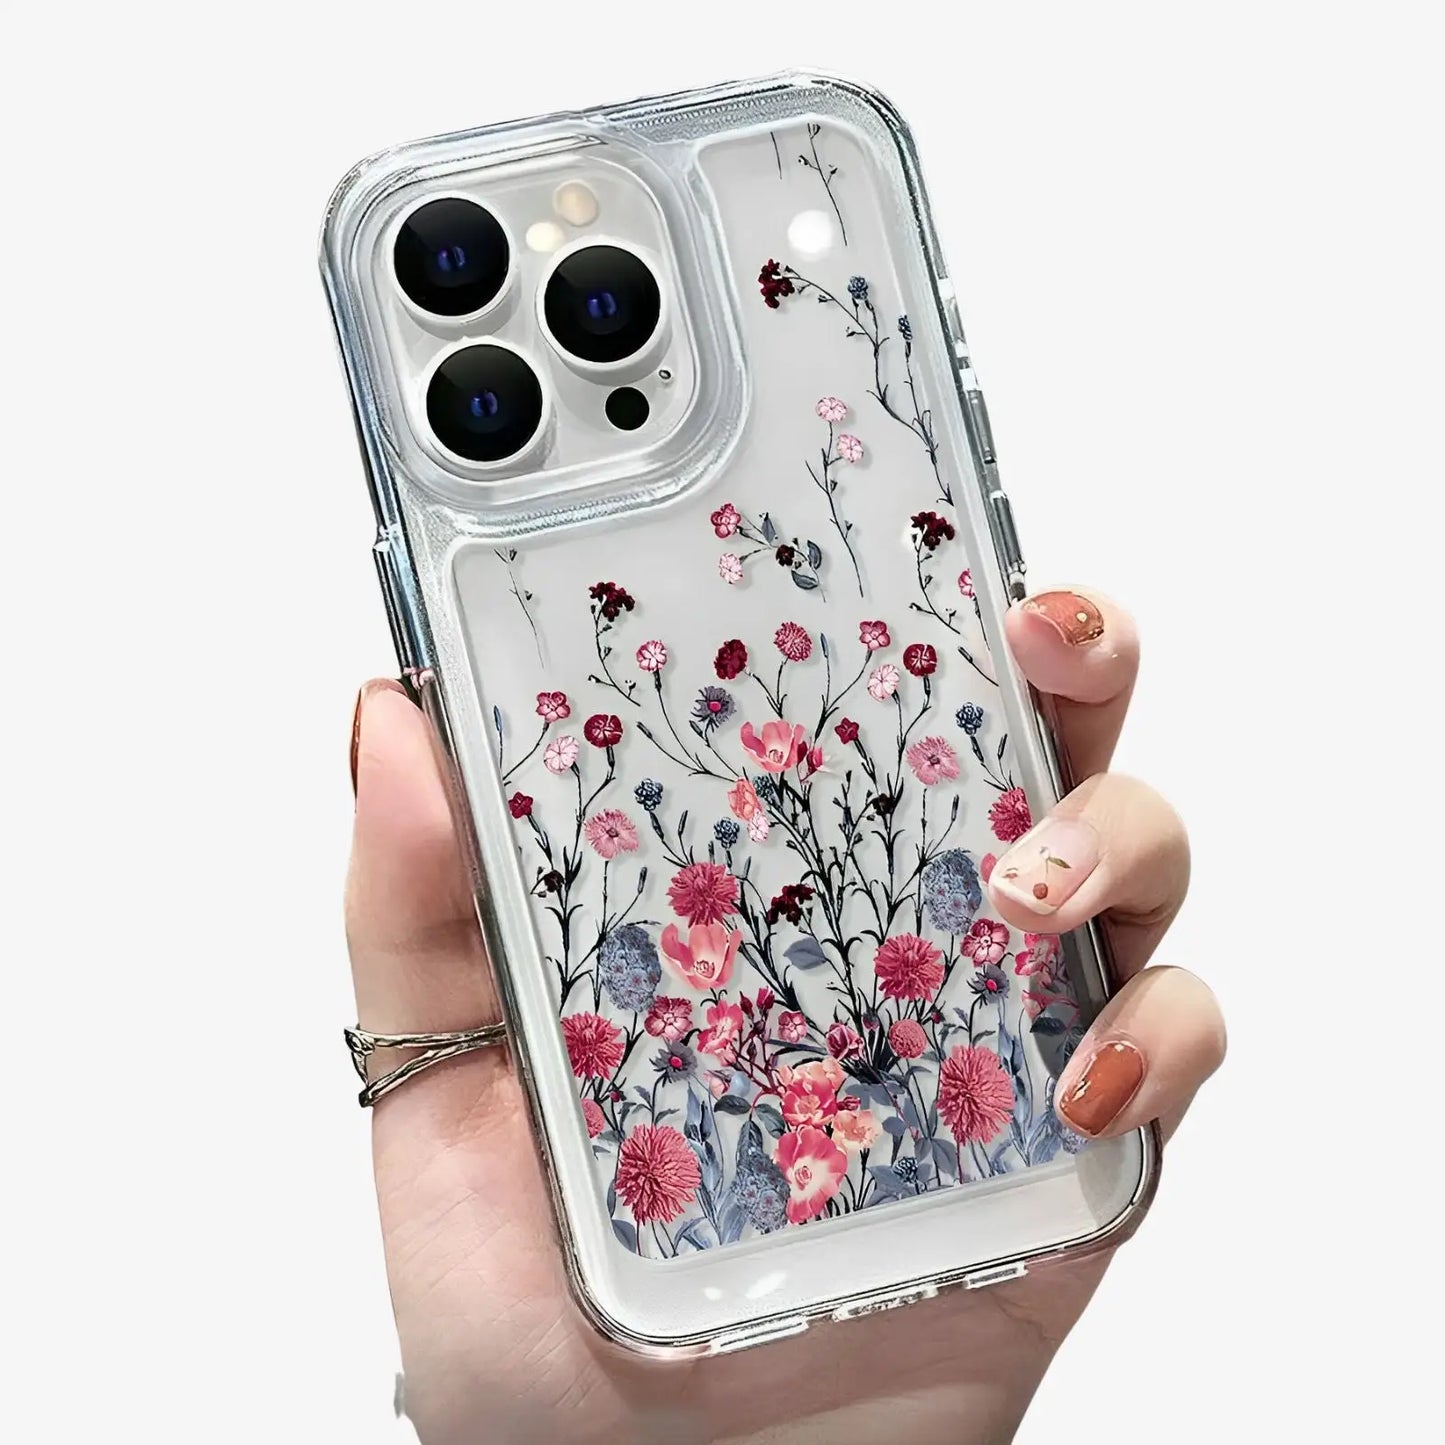 Coque transparente iPhone fleurs roses